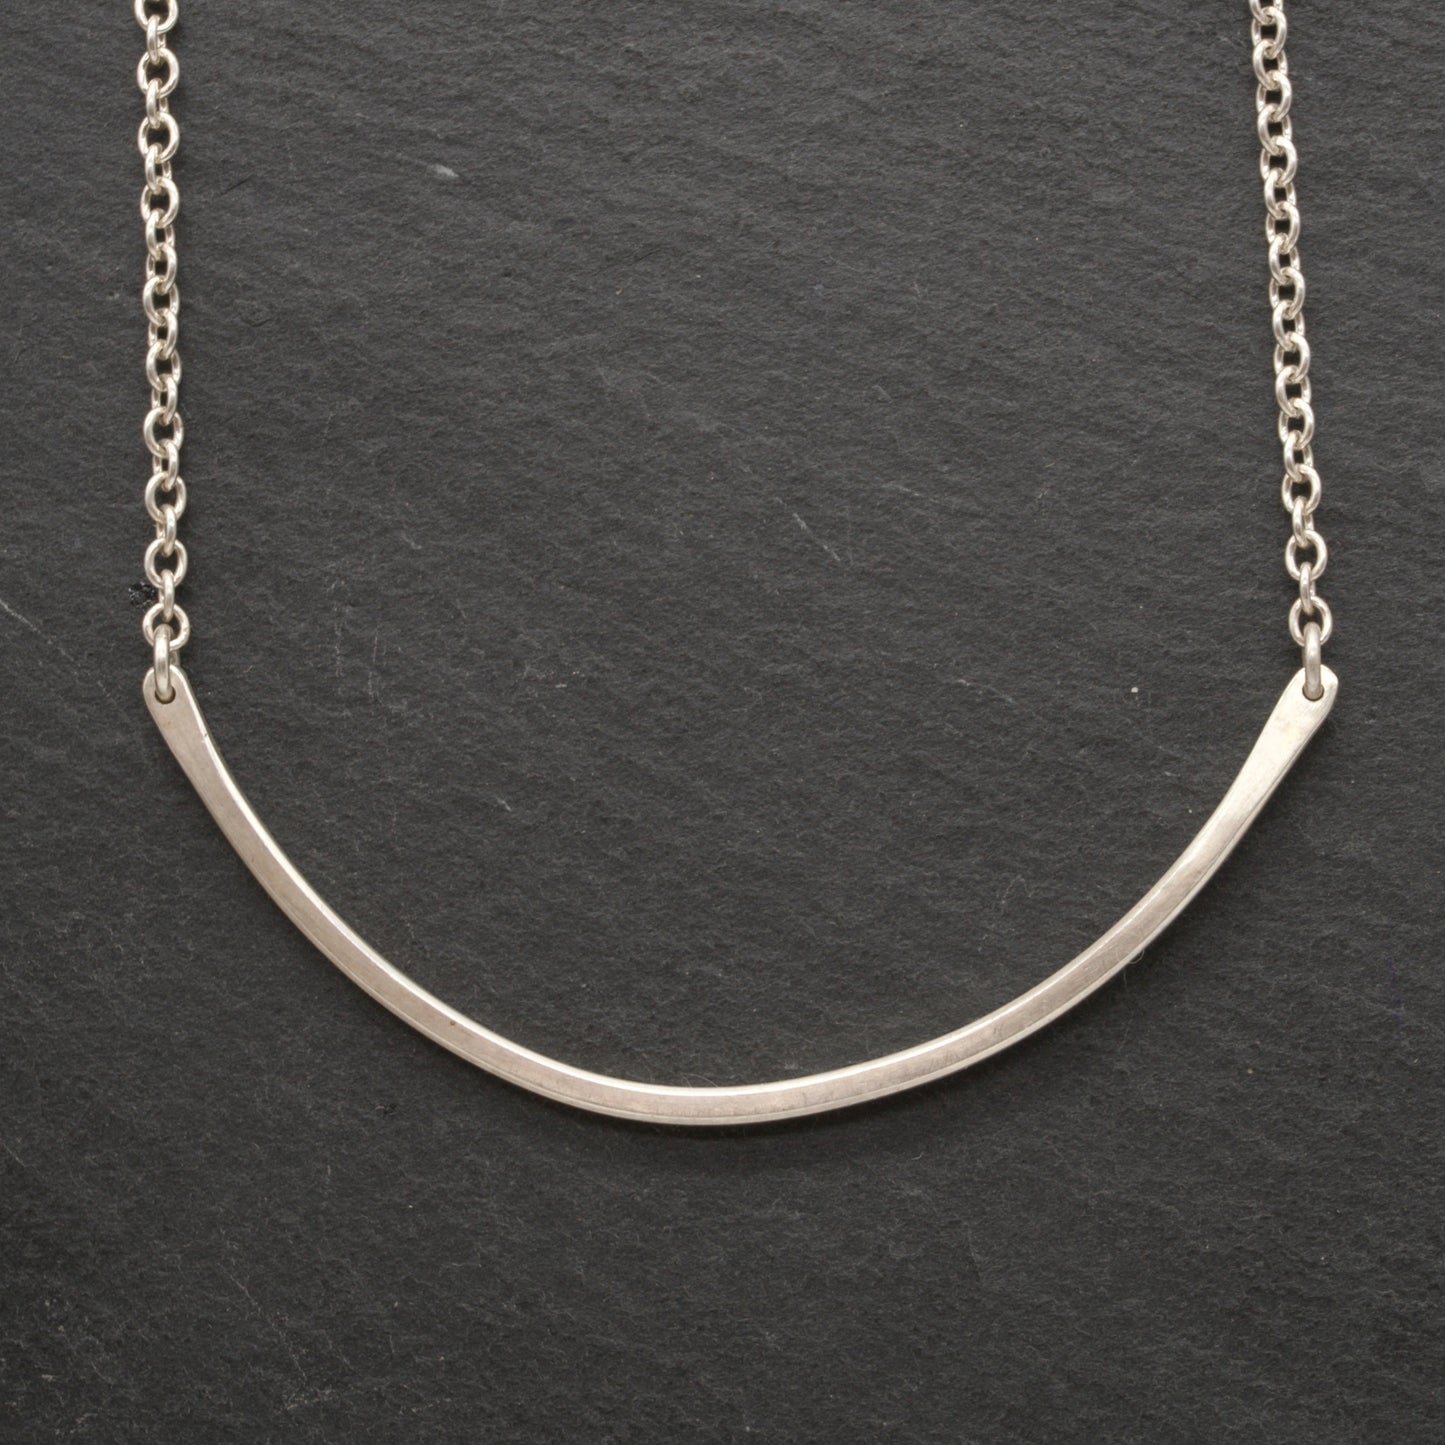 Silver neckace online for women, Silverlinings